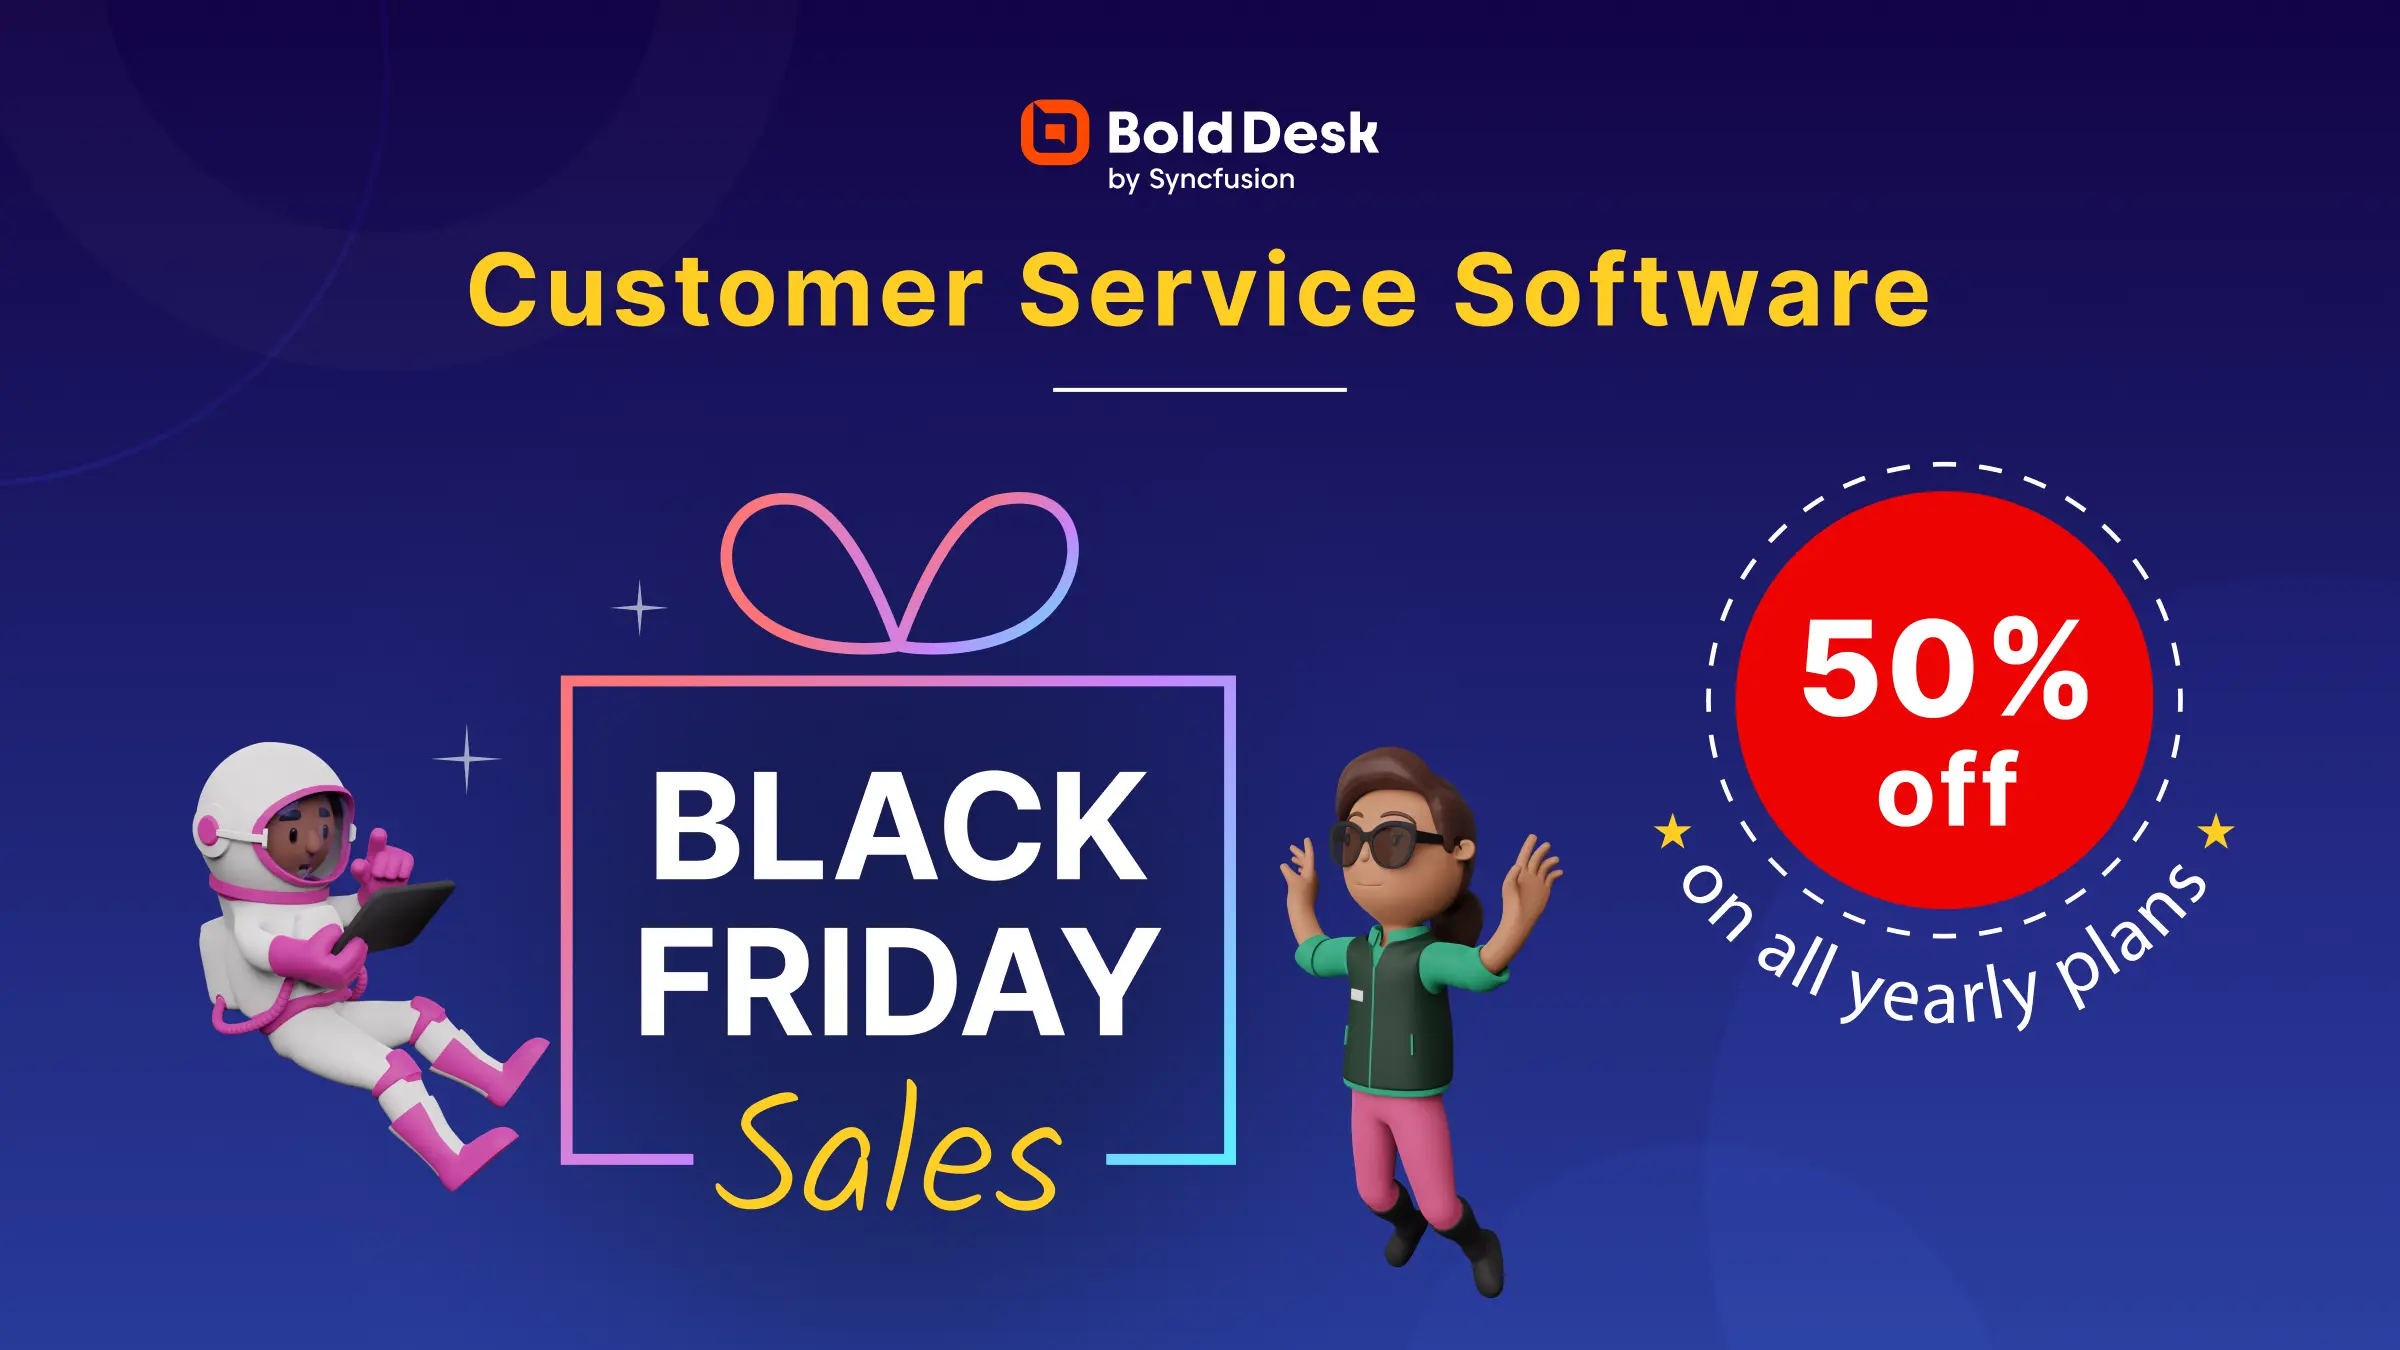 BoldDesk Black Friday offer